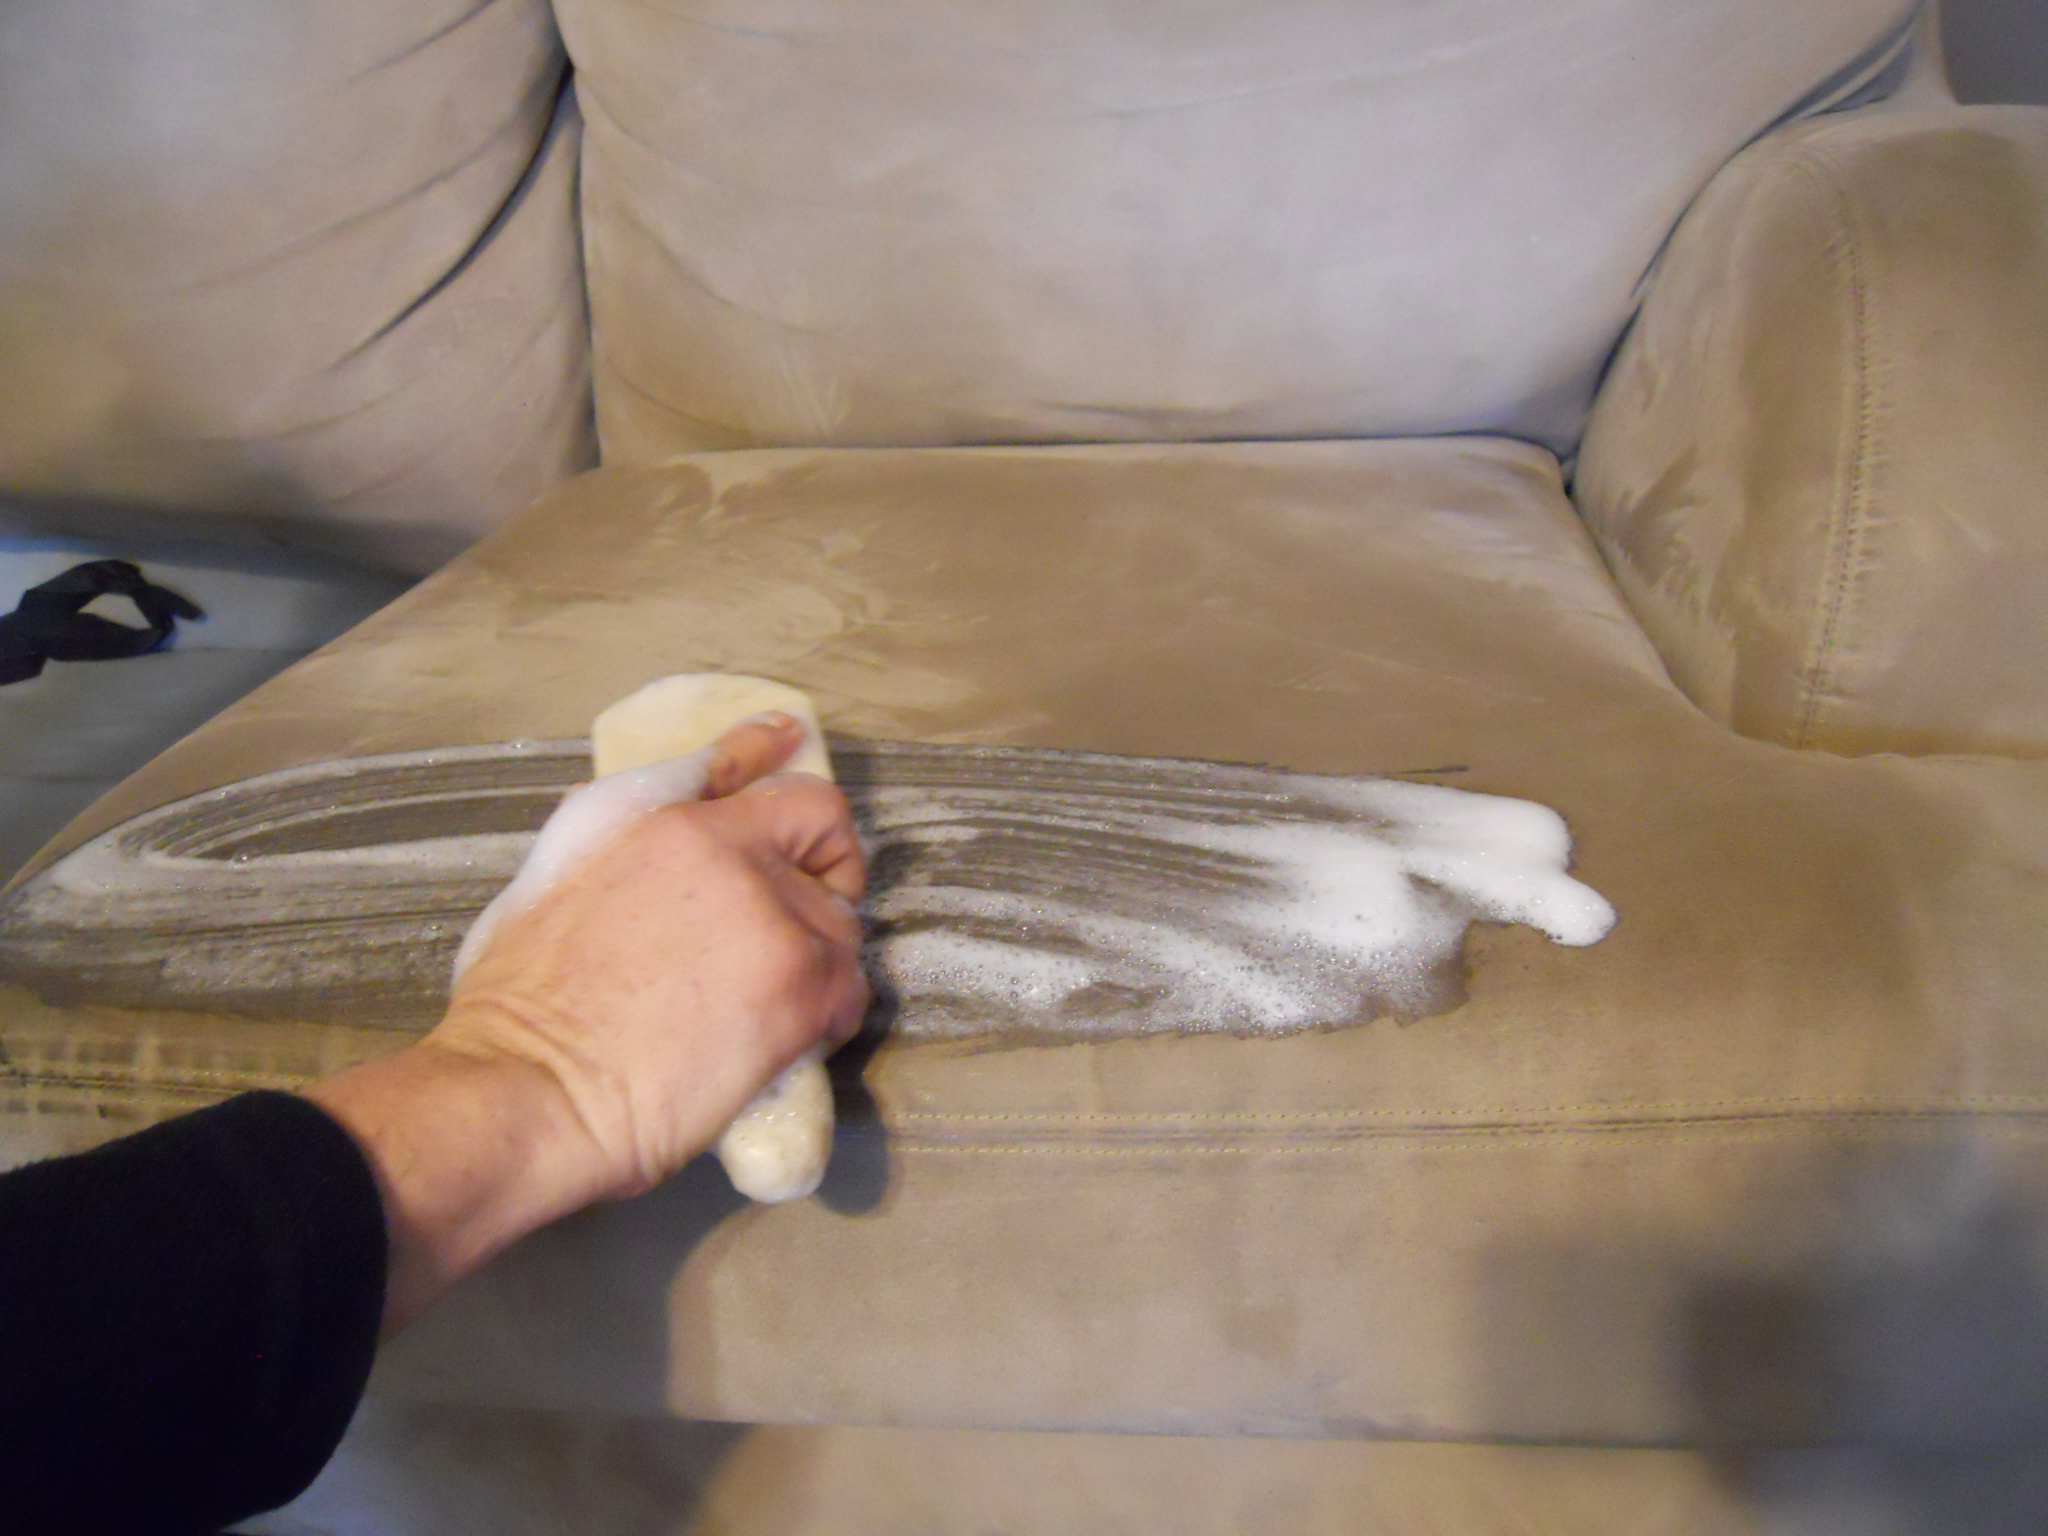 почистить диван от запаха пота